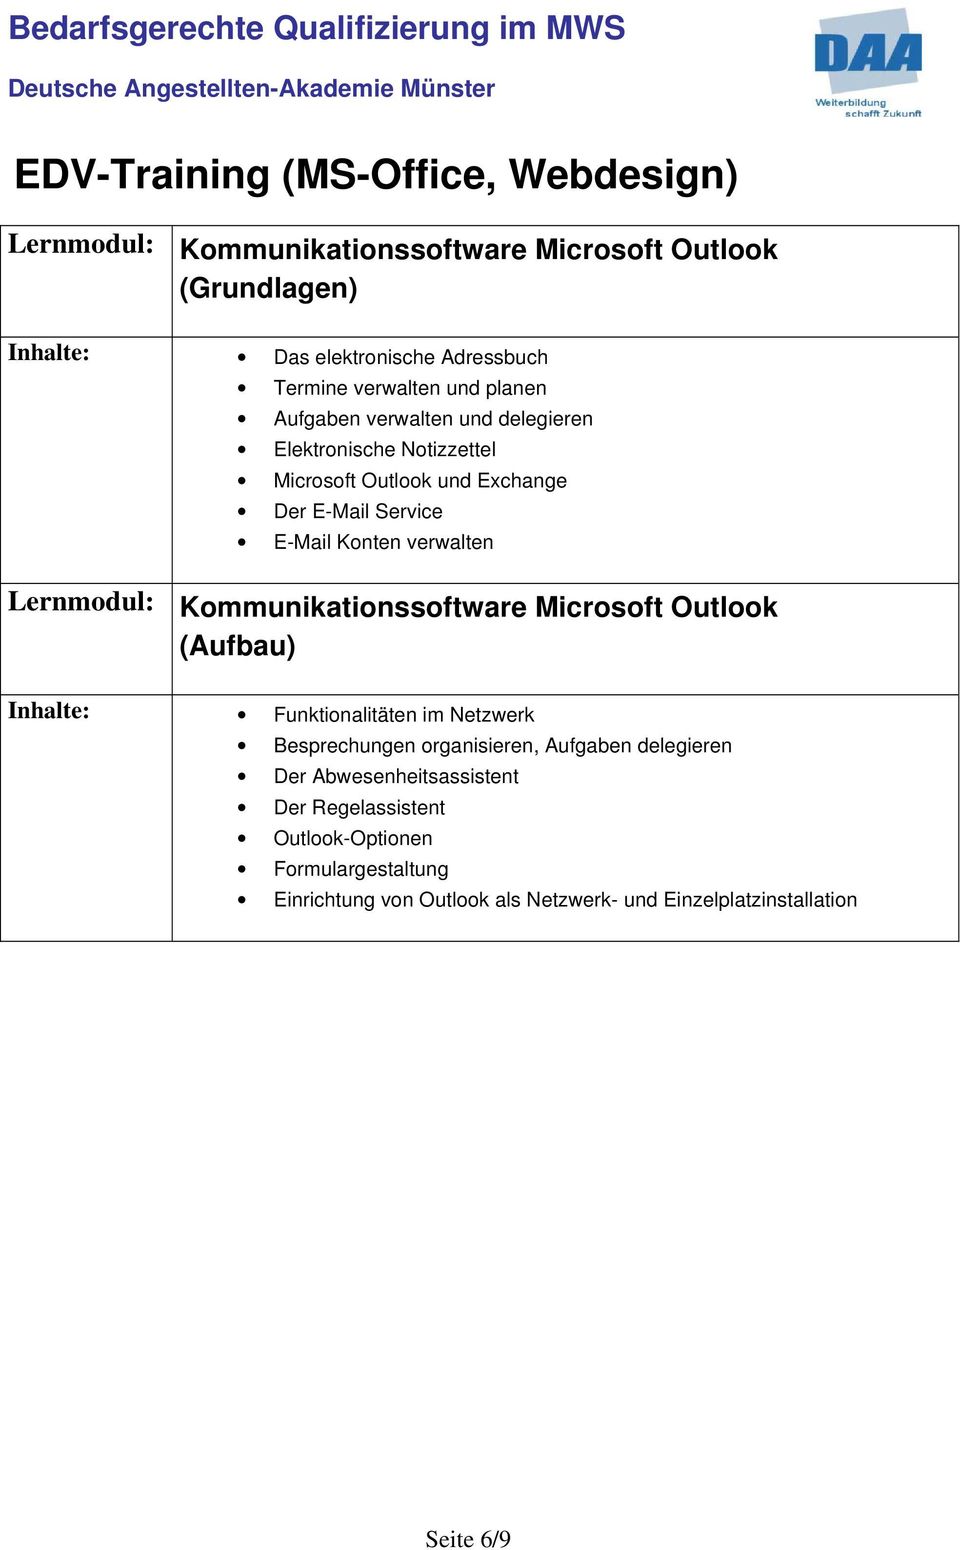 Kommunikationssoftware Microsoft Outlook (Aufbau) Inhalte: Funktionalitäten im Netzwerk Besprechungen organisieren, Aufgaben delegieren Der